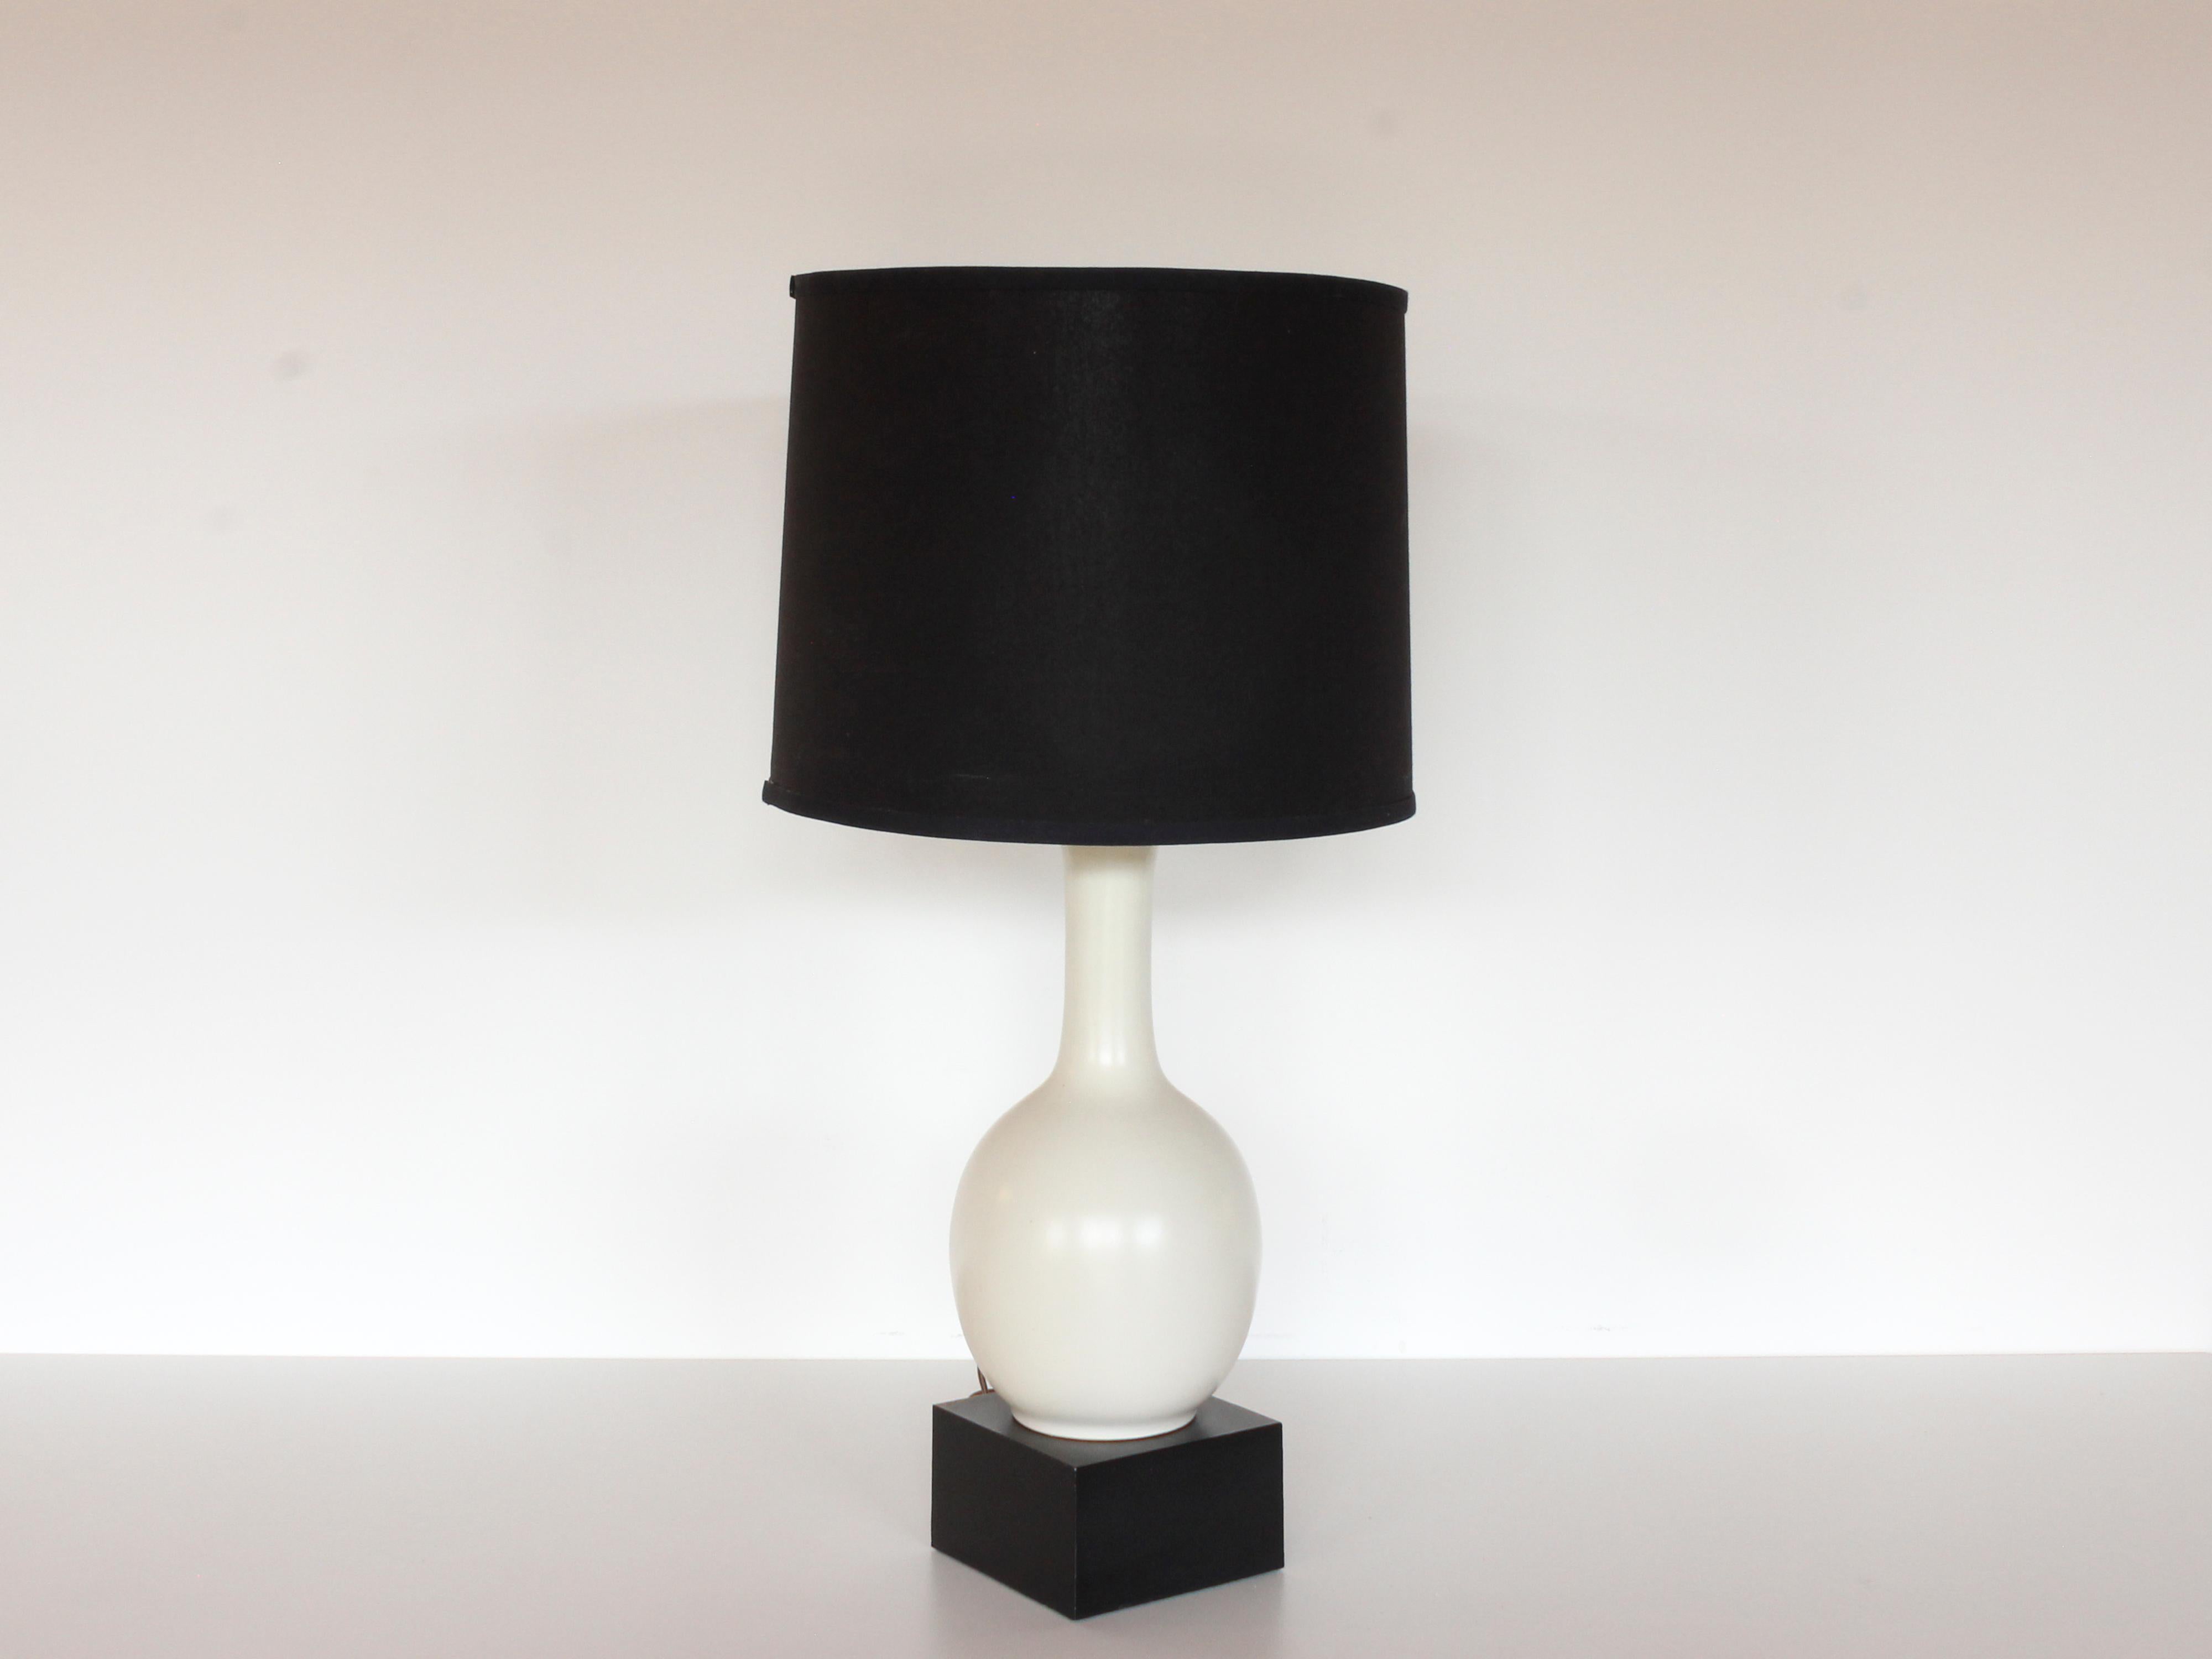 Lampe de table des années 1960 en poterie blanche craquelée et craquelée sur base carrée en bloc noir, avec abat-jour noir. La base noire mesure 6